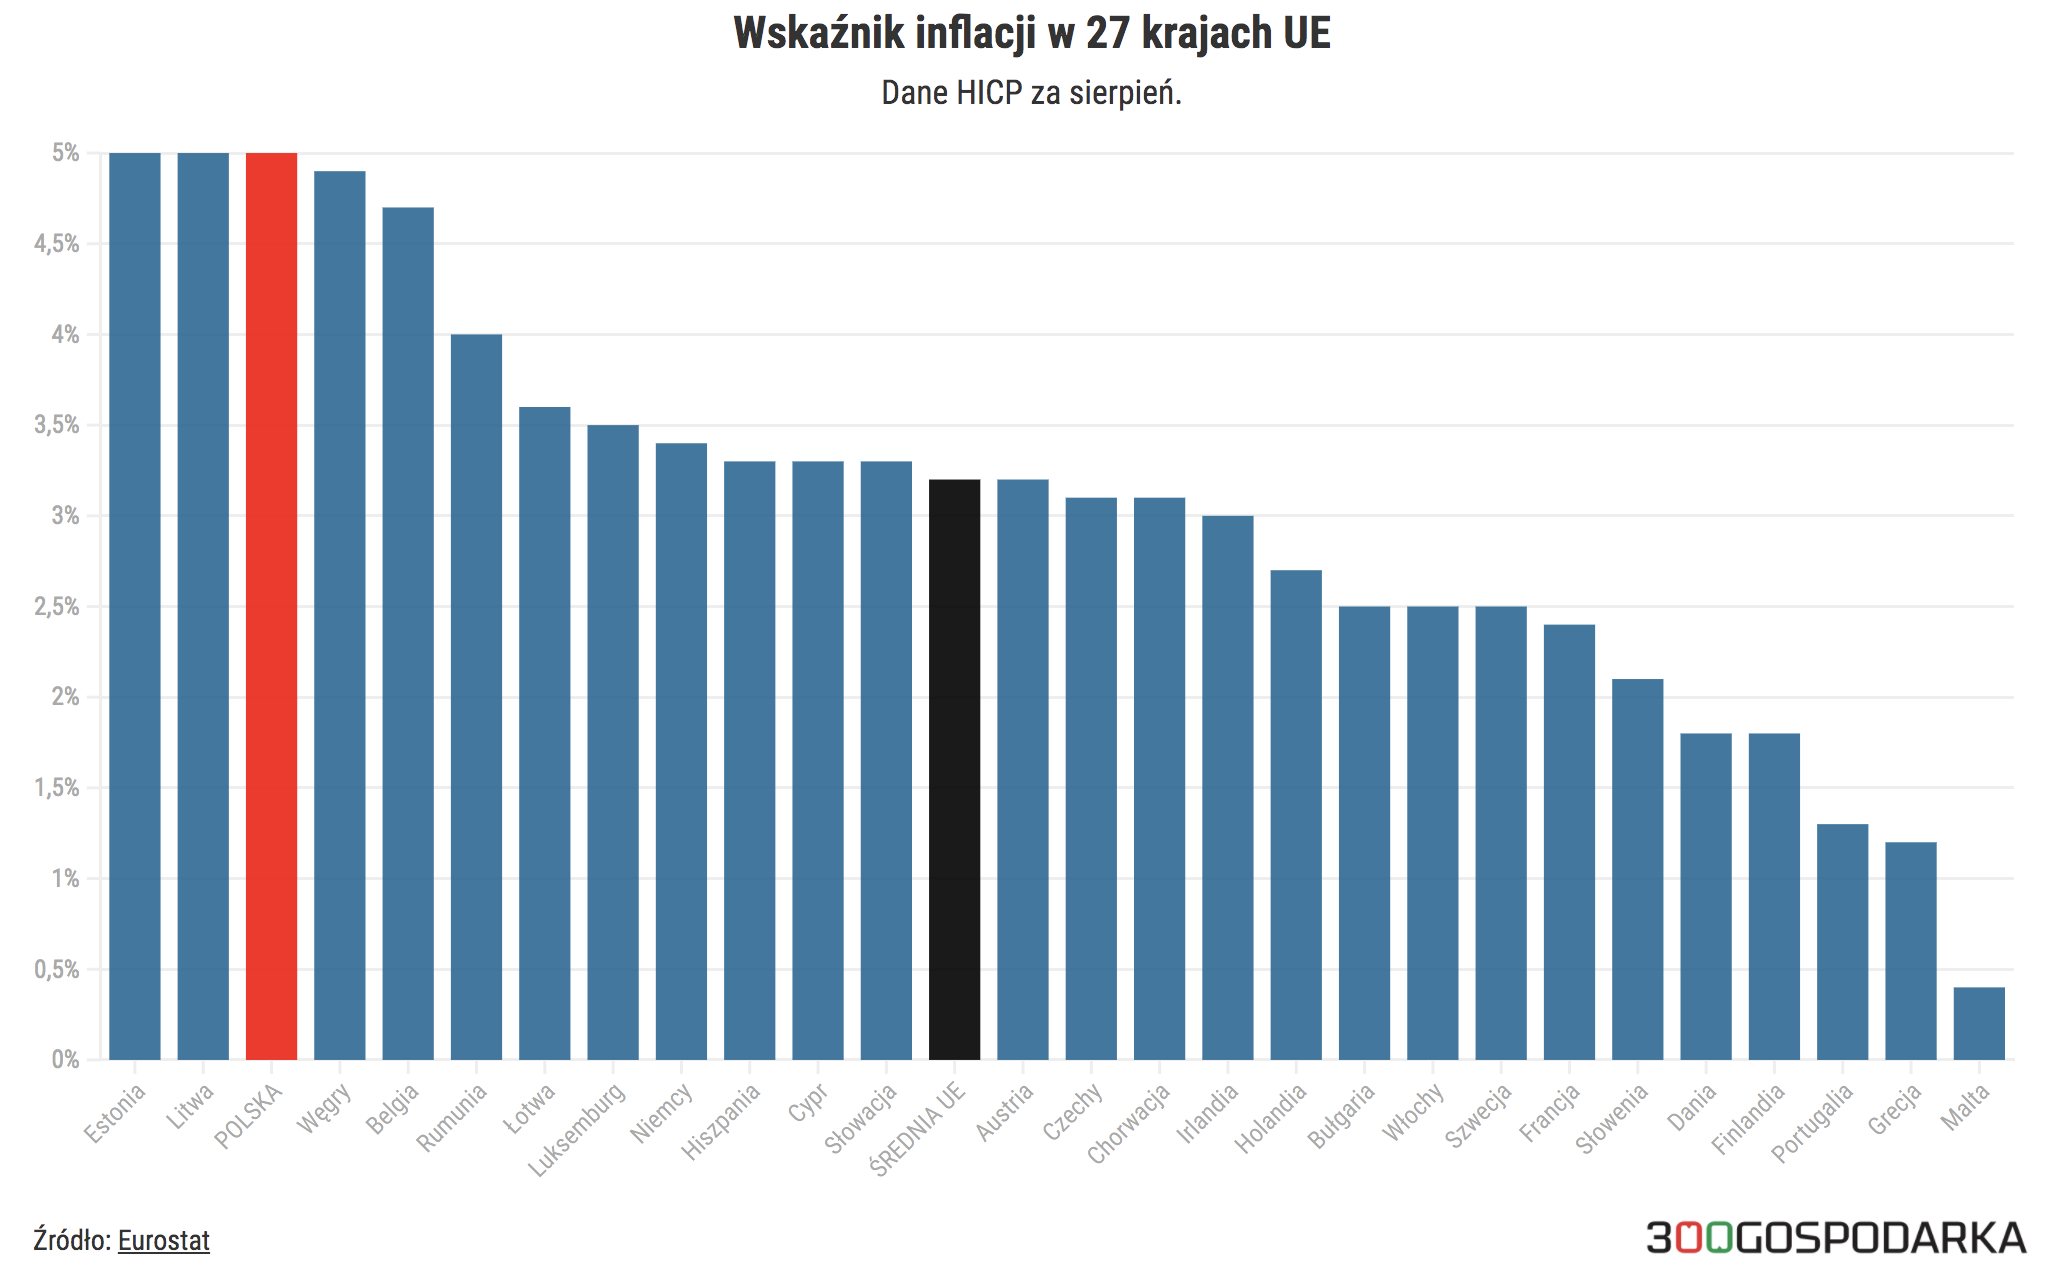 Polska Wrocila Na Szczyt Krajow Ue Z Najwyzsza Inflacja 300gospodarka Pl